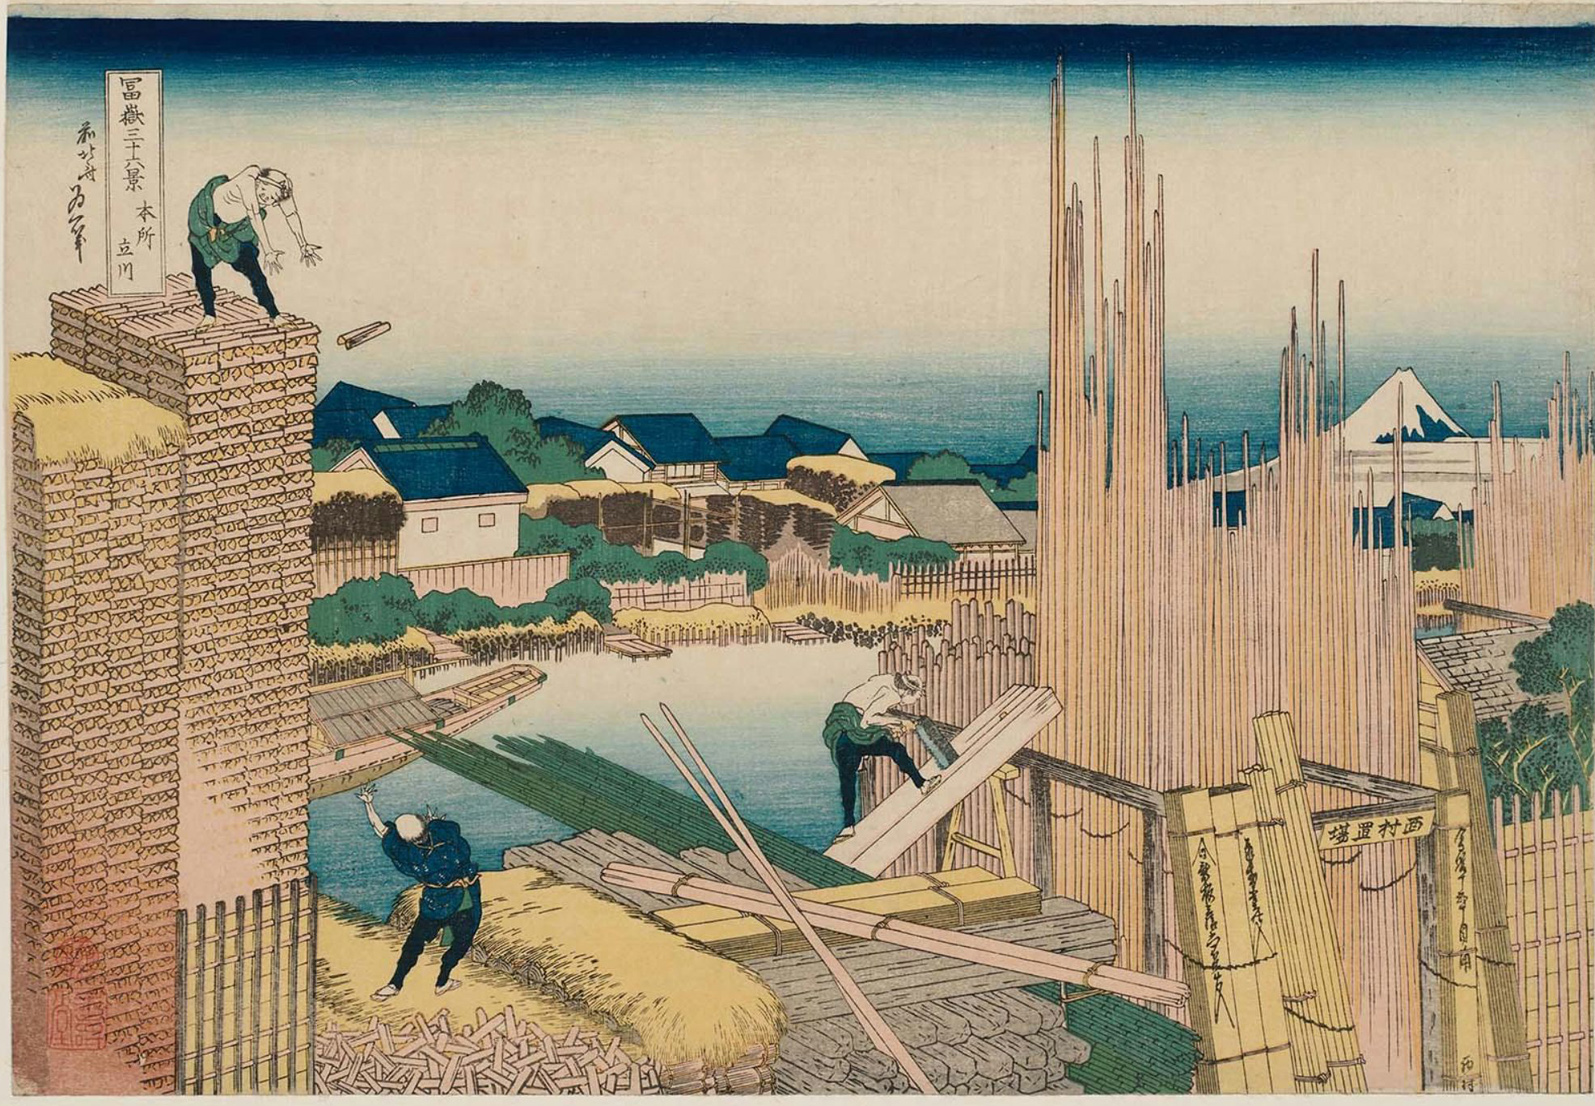 Hokusai - #37 Tatekawa in Honjo - 36 Views of Mt Fuji